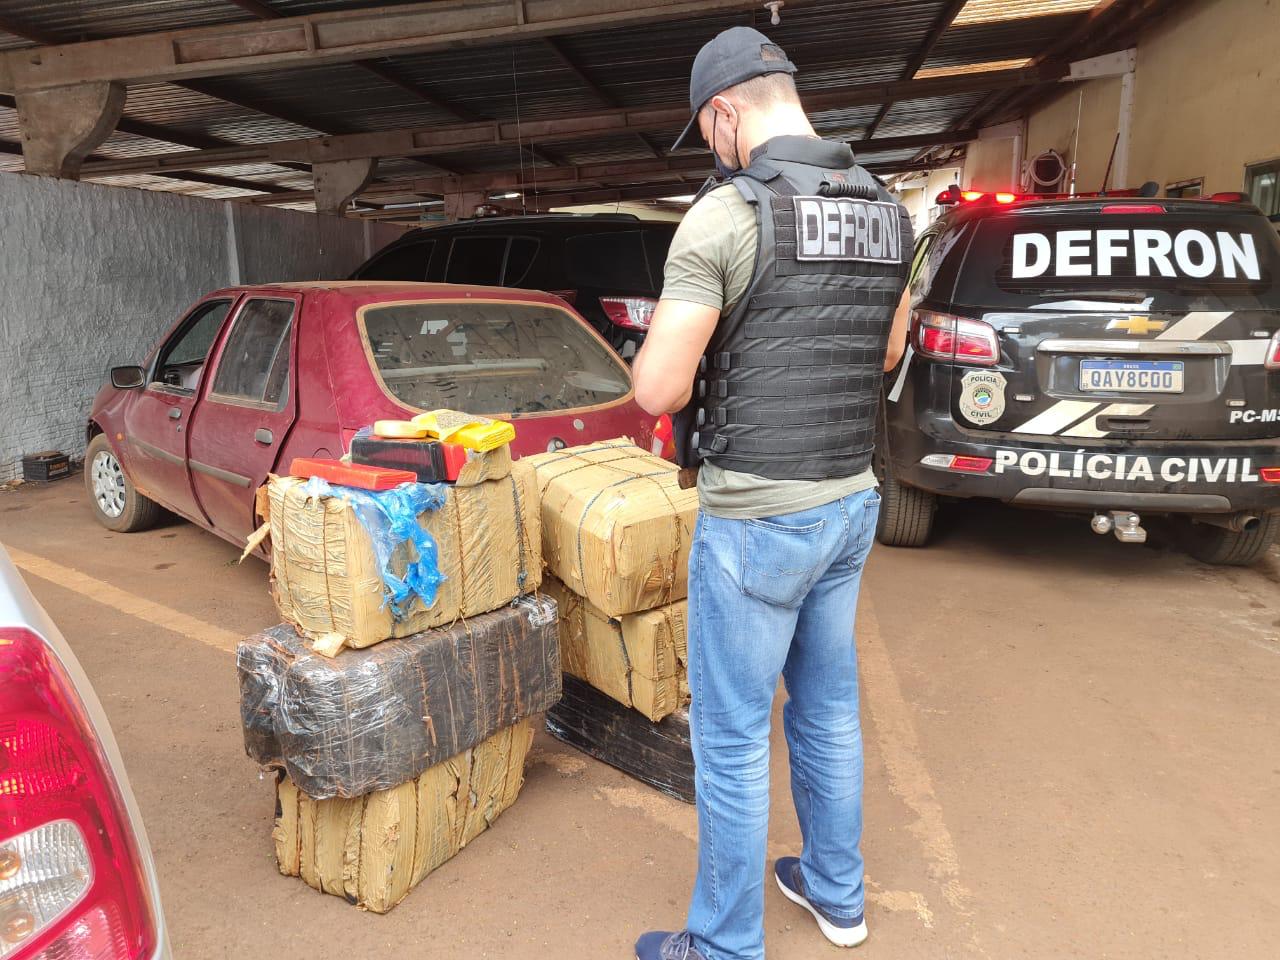 Polícia Civil apreende 300kg de maconha e prende dois suspeitos em Dourados